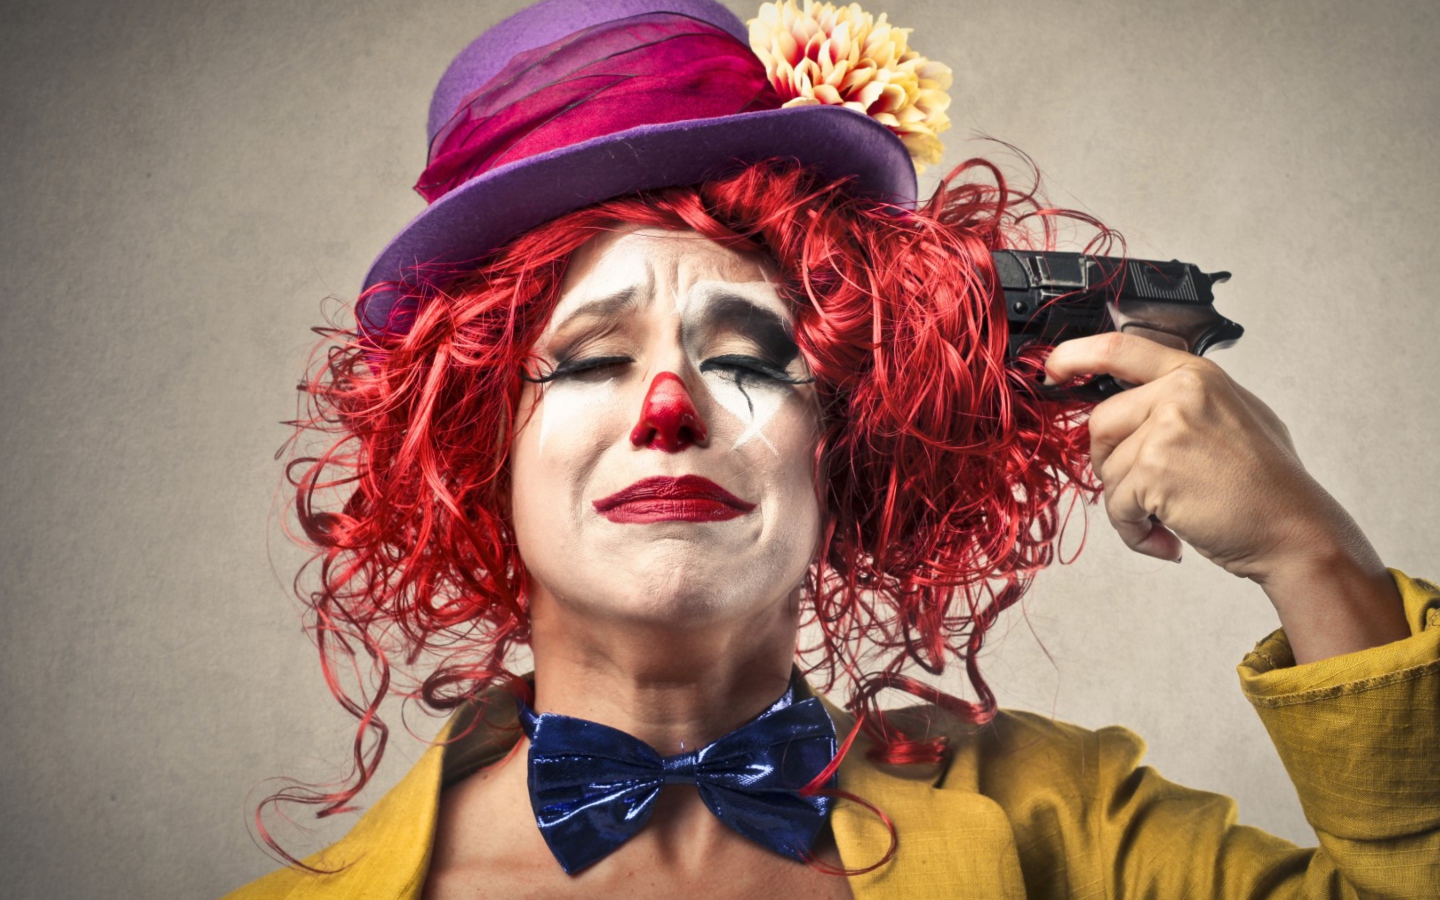 Sad Clown wallpaper 1440x900